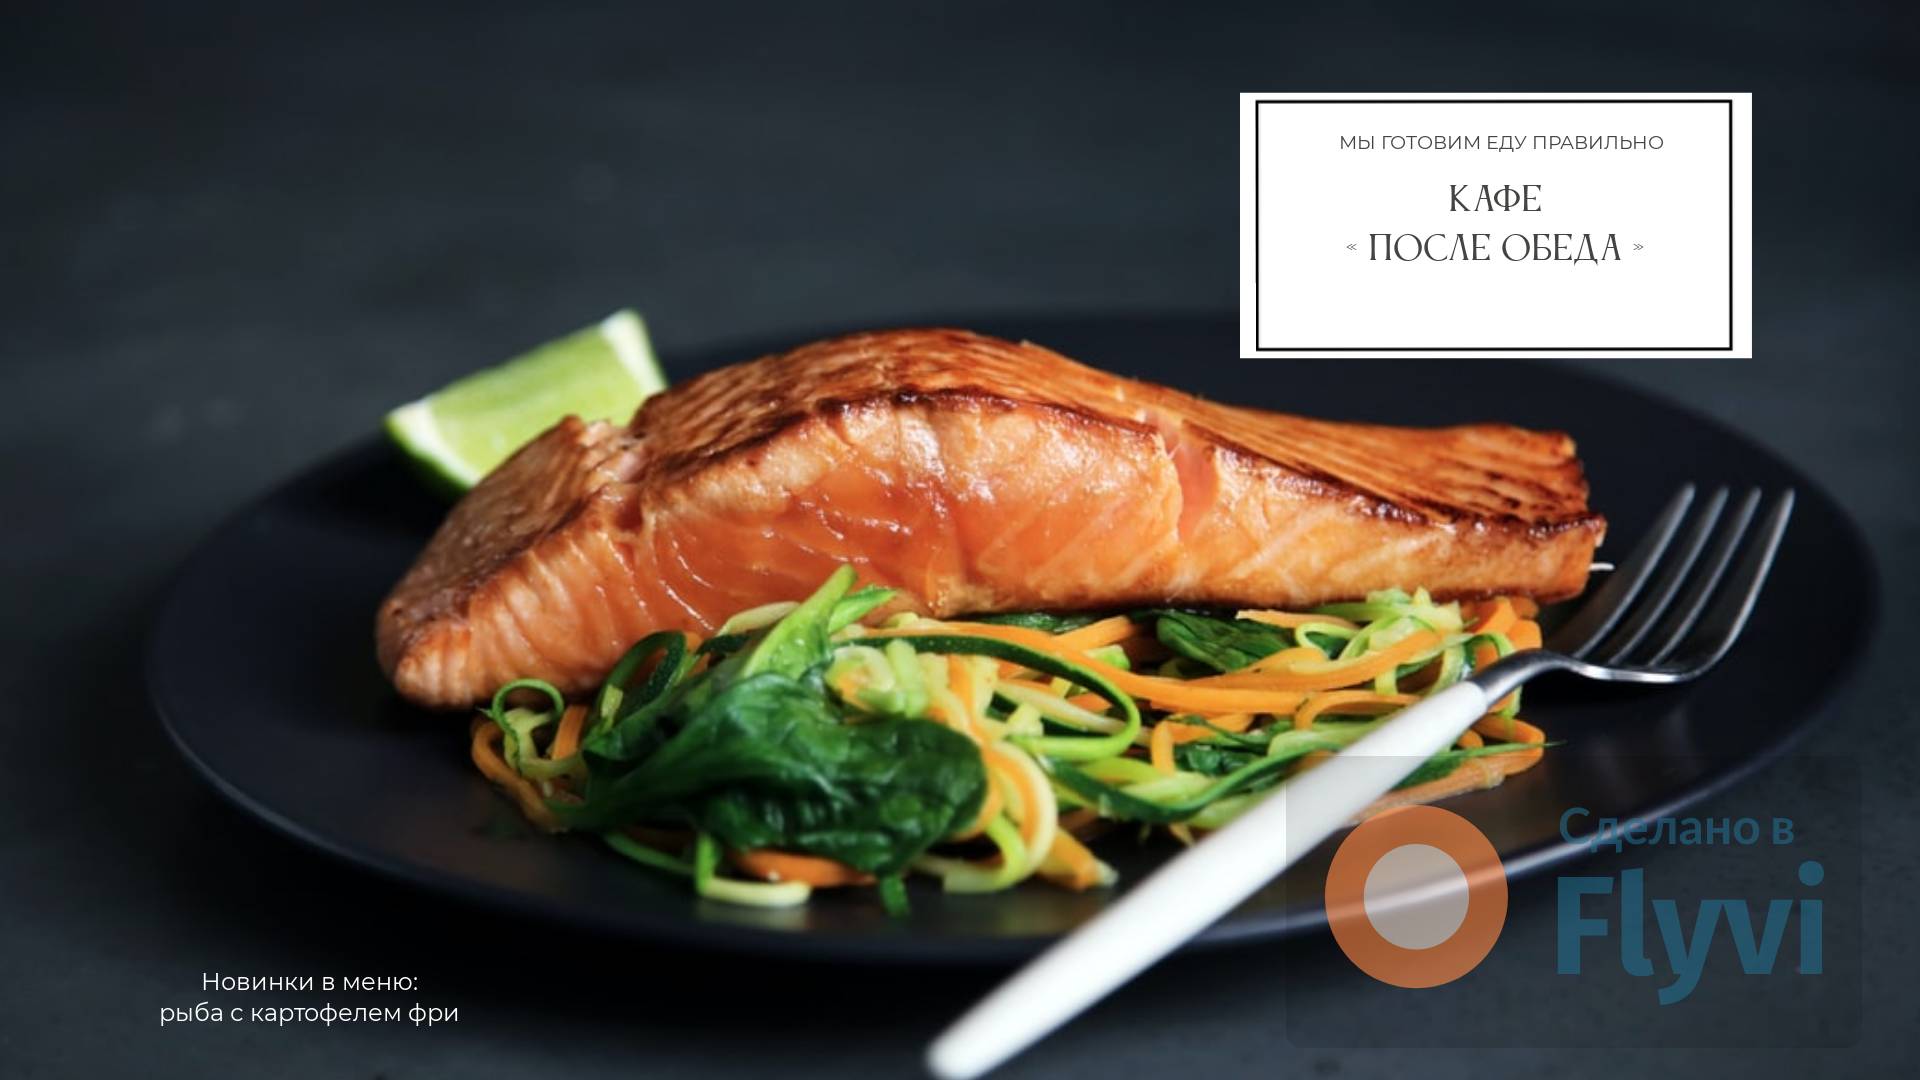 Свежие овощи и запеченная рыба с лаймом на матовой черной тарелке в аппетитном натюрморте для рекламы ресторана в соцсетях